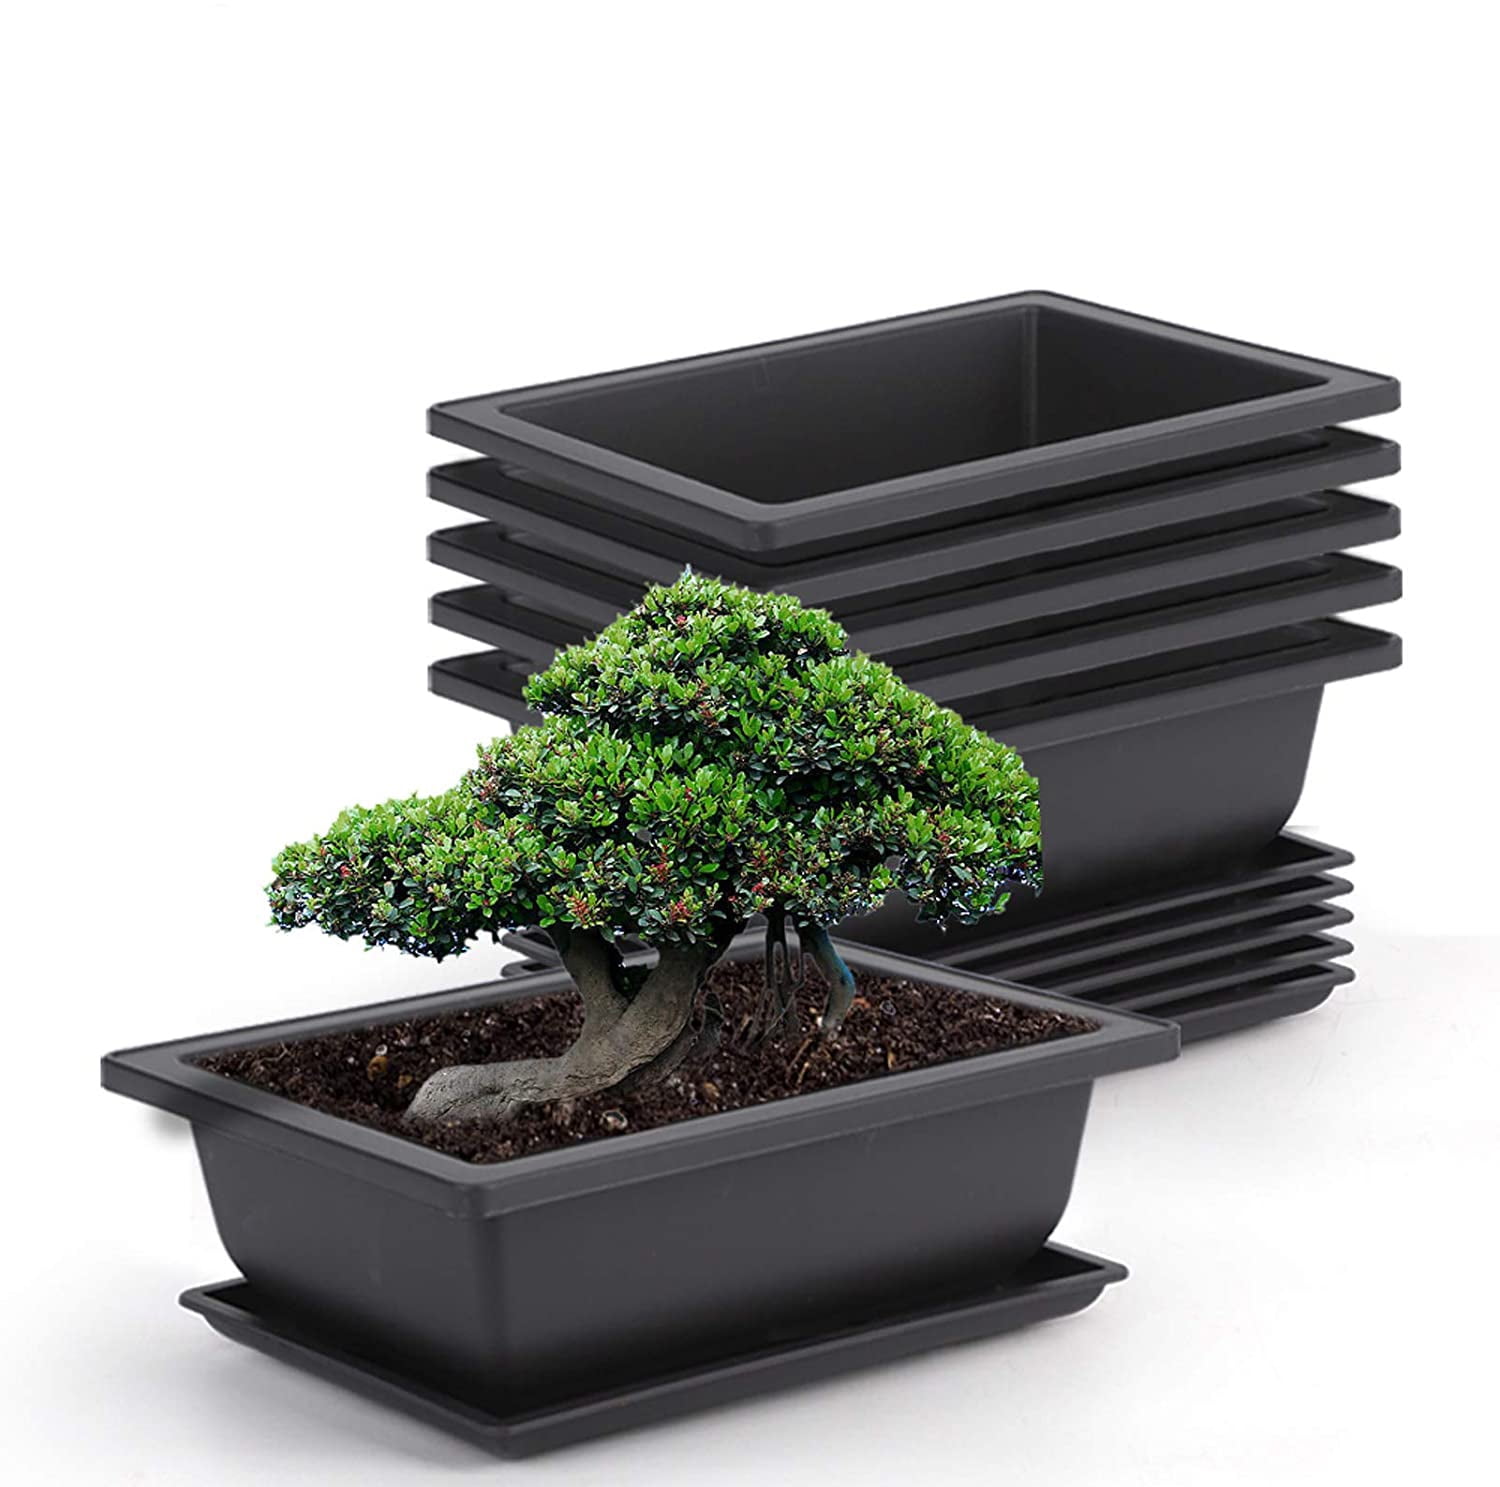 Details about   15Pcs 6 Inch Plant Pot Rectangular Plastic Bonsai Training Pots Flower Succulent 